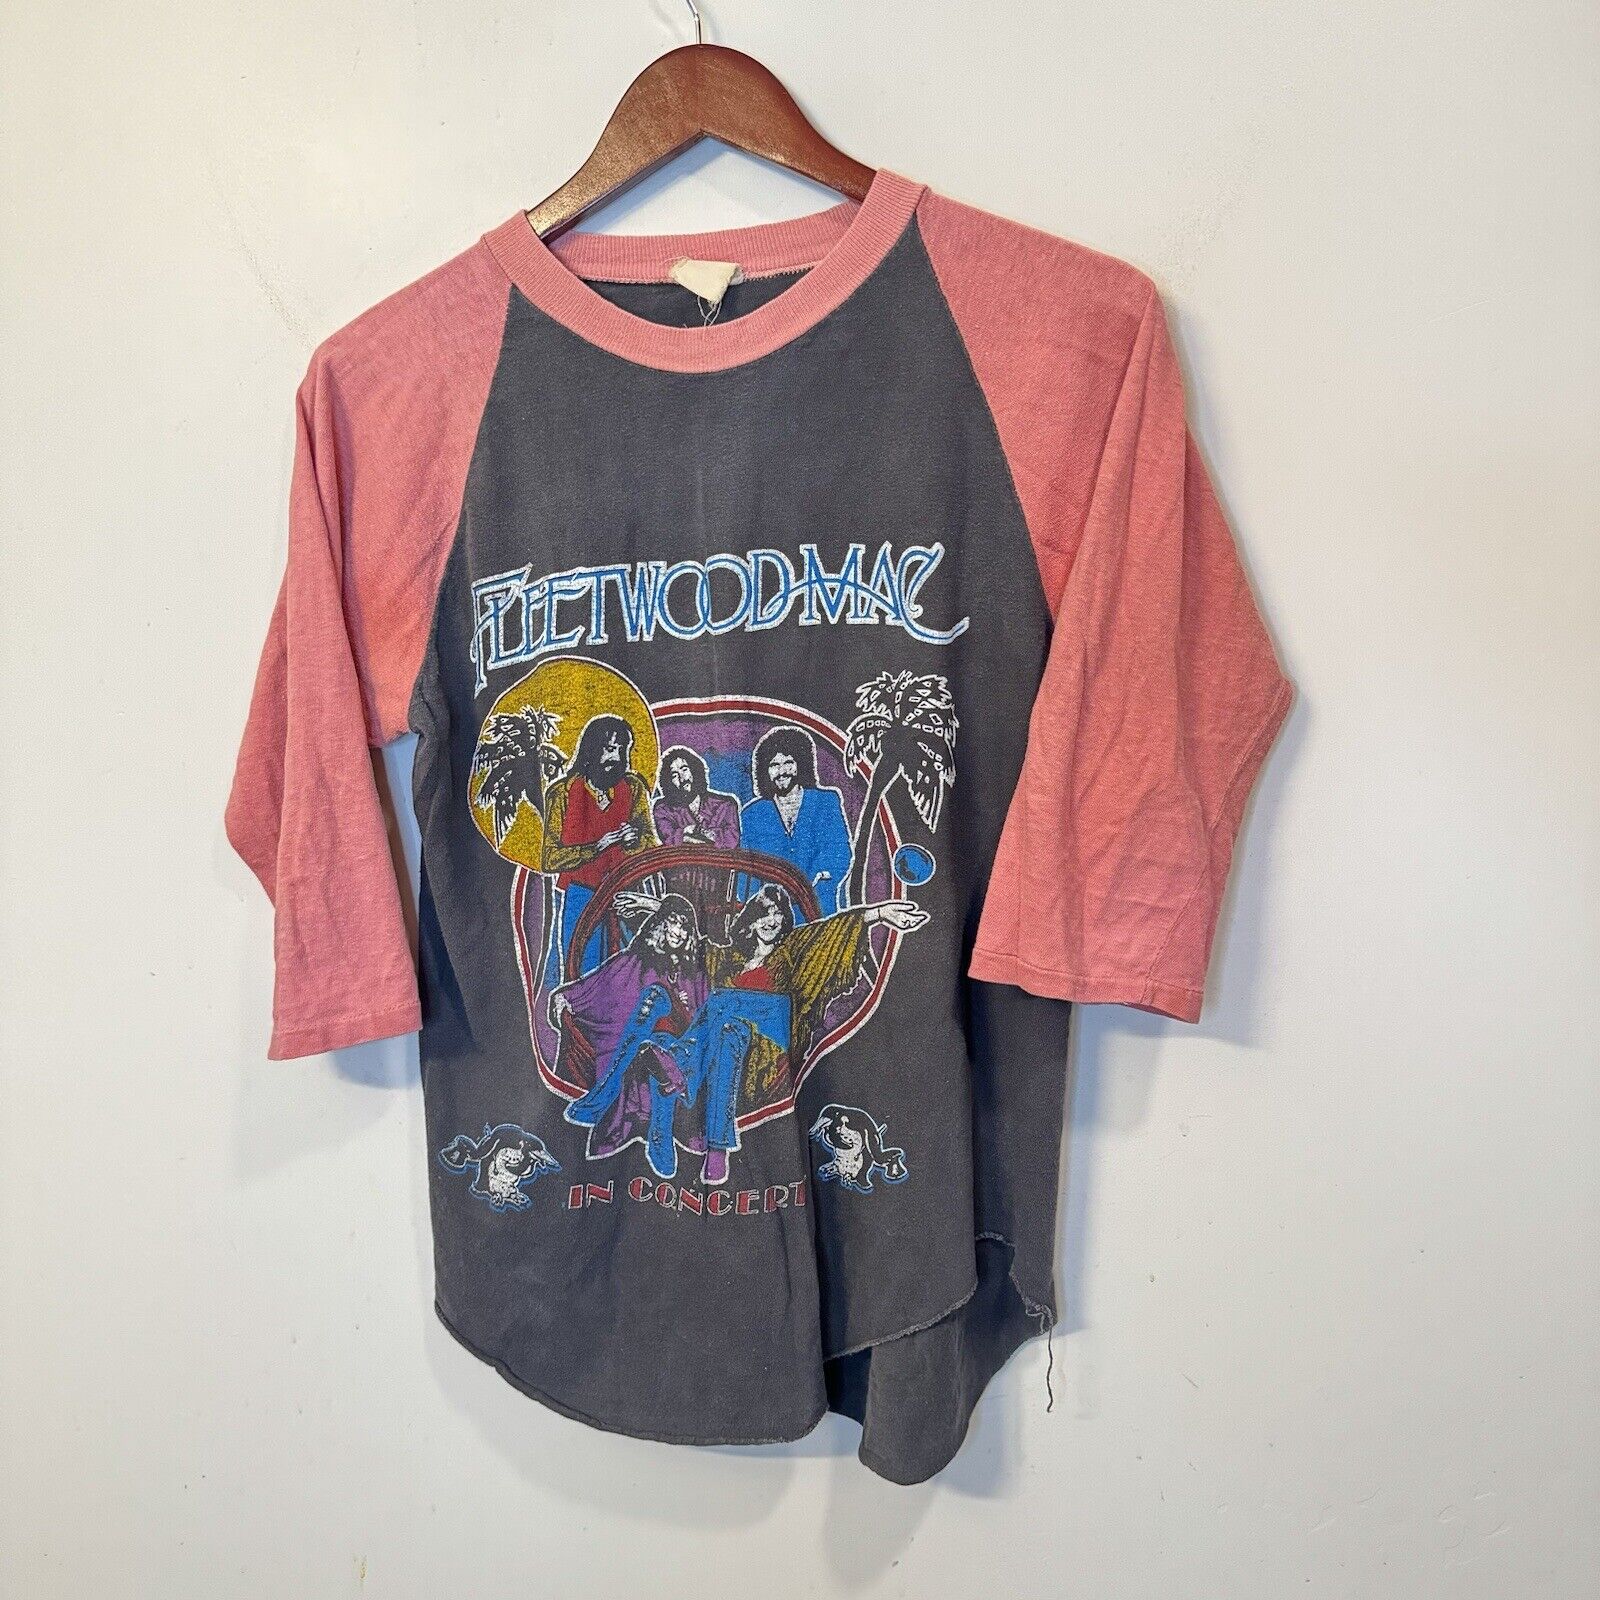 Vintage 1970s Fleetwood Mac Mirage Tour Raglan Tee T Shirt Black Pink RARE sz M